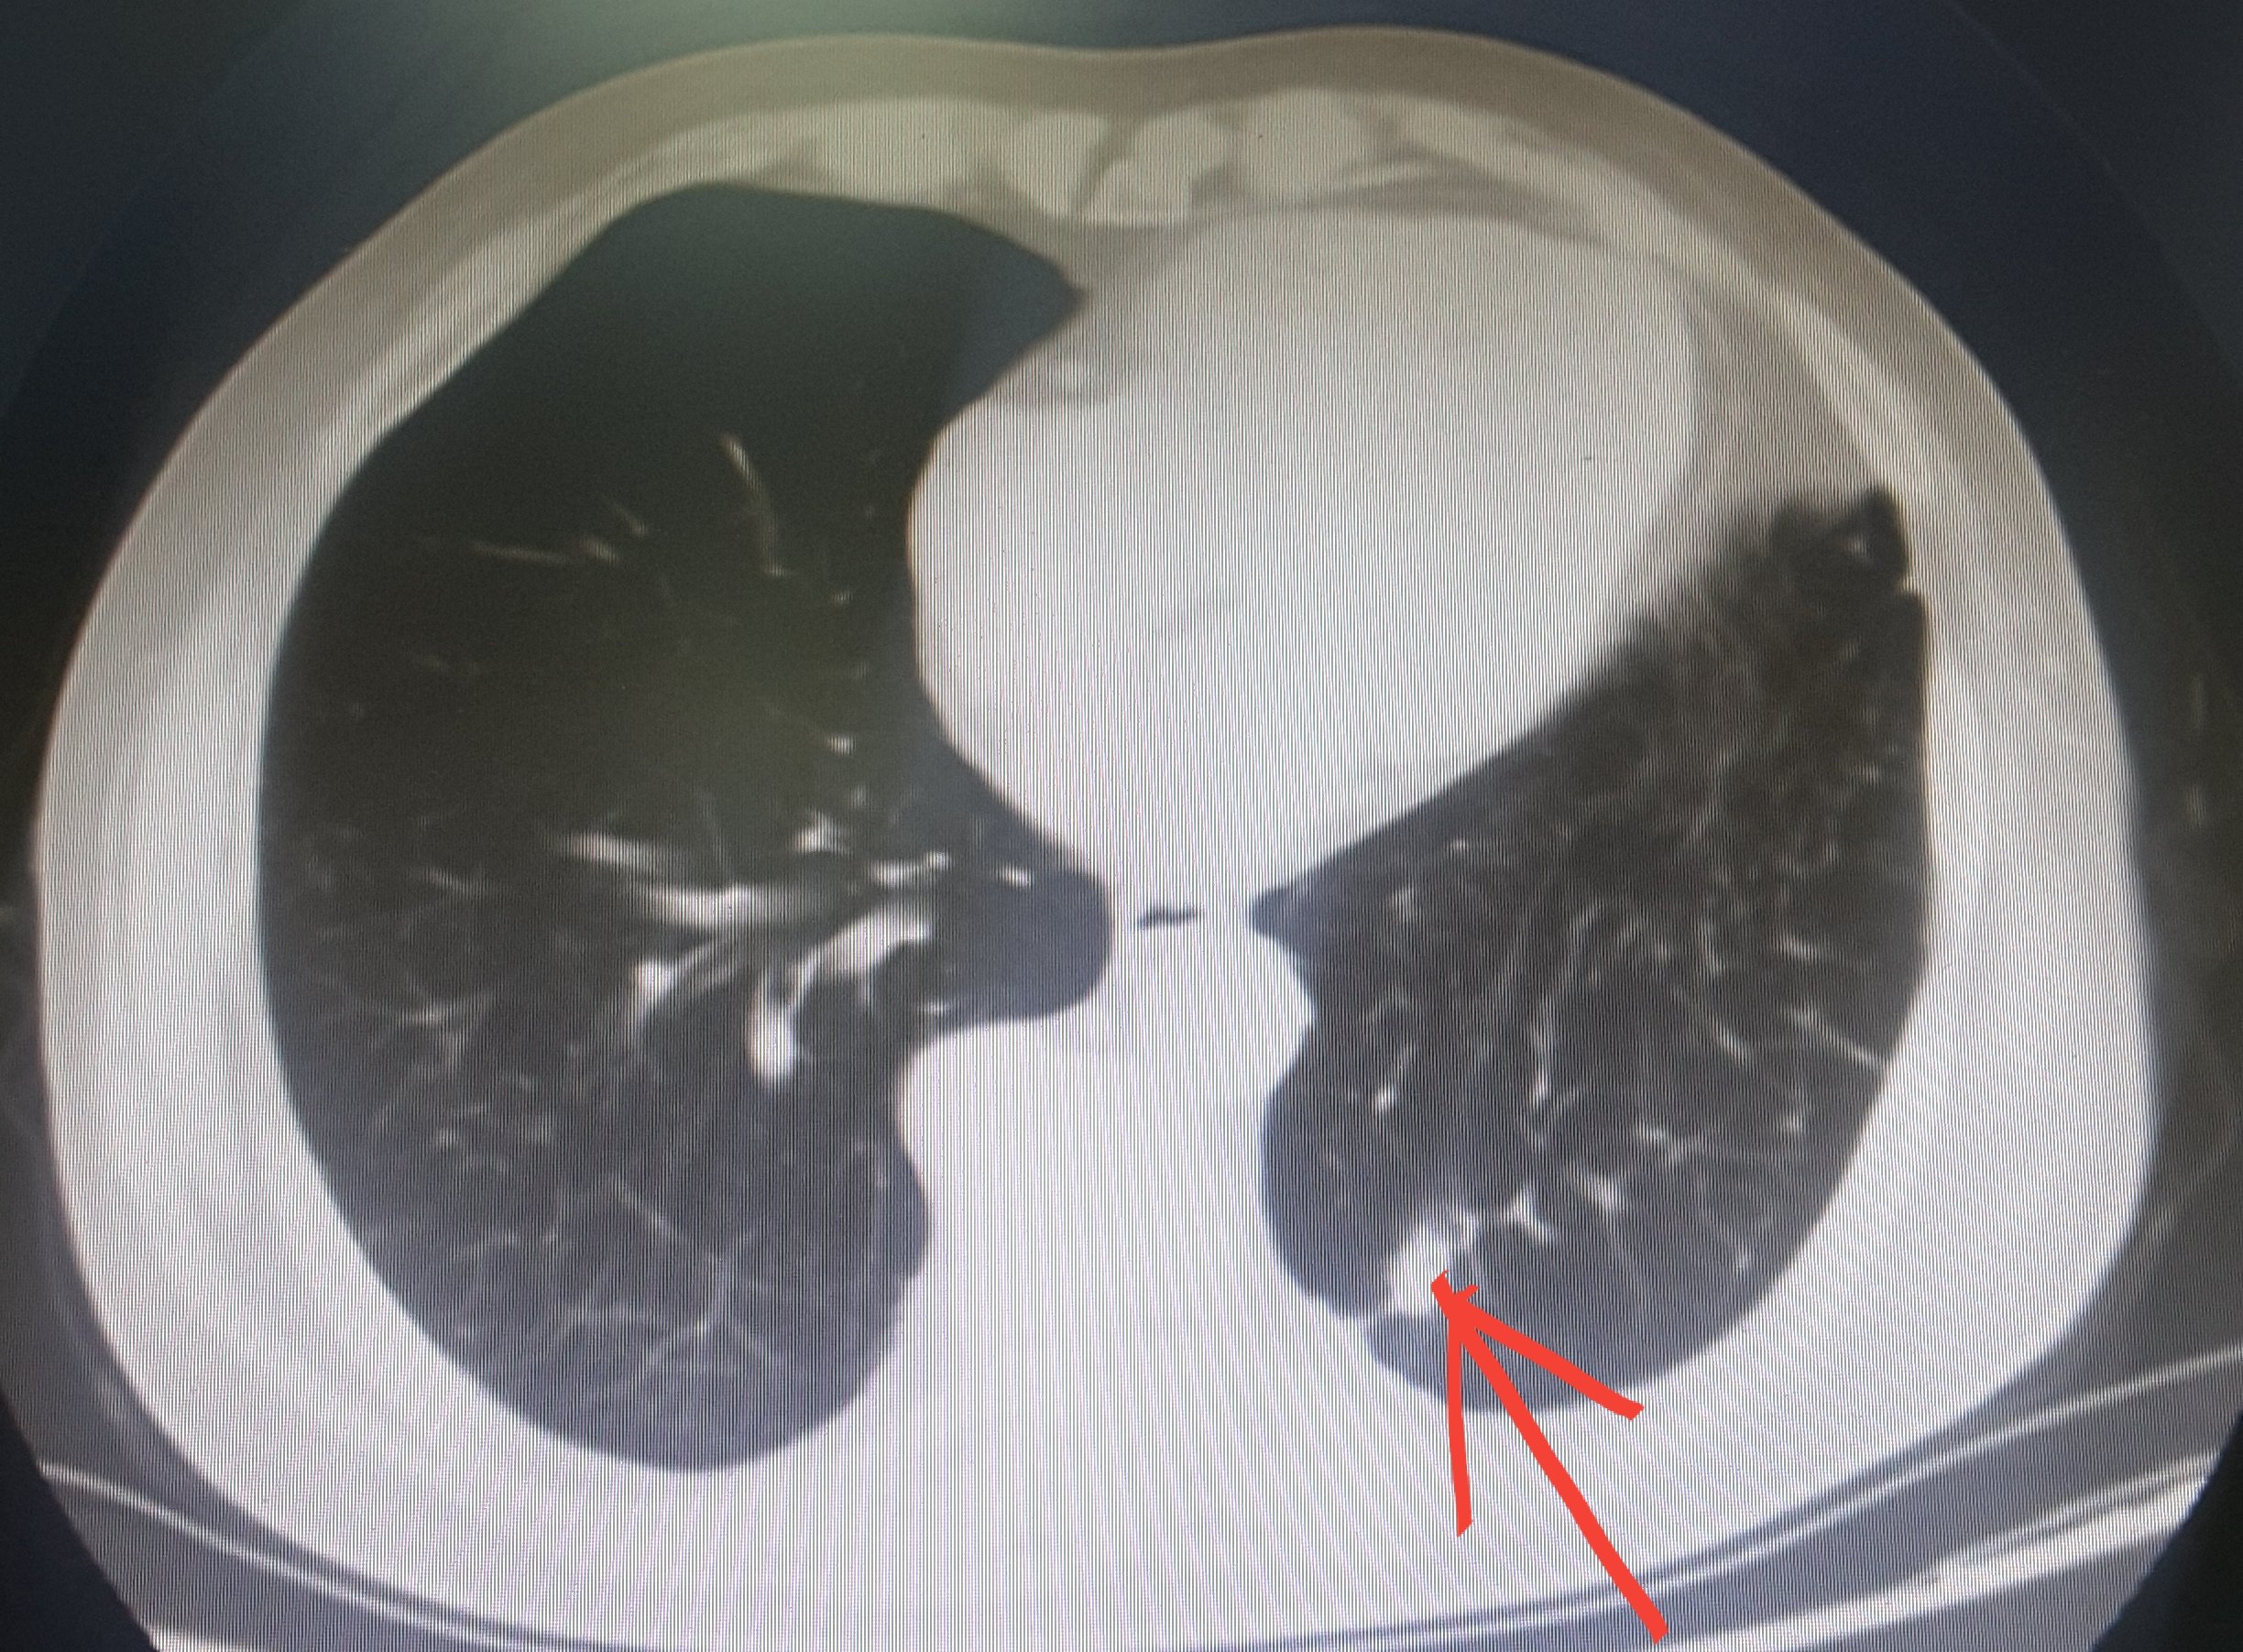 胸部 CT 入门：6 种最常见征象 + 相关疾病介绍 - 呼吸与胸部疾病讨论版 -丁香园论坛